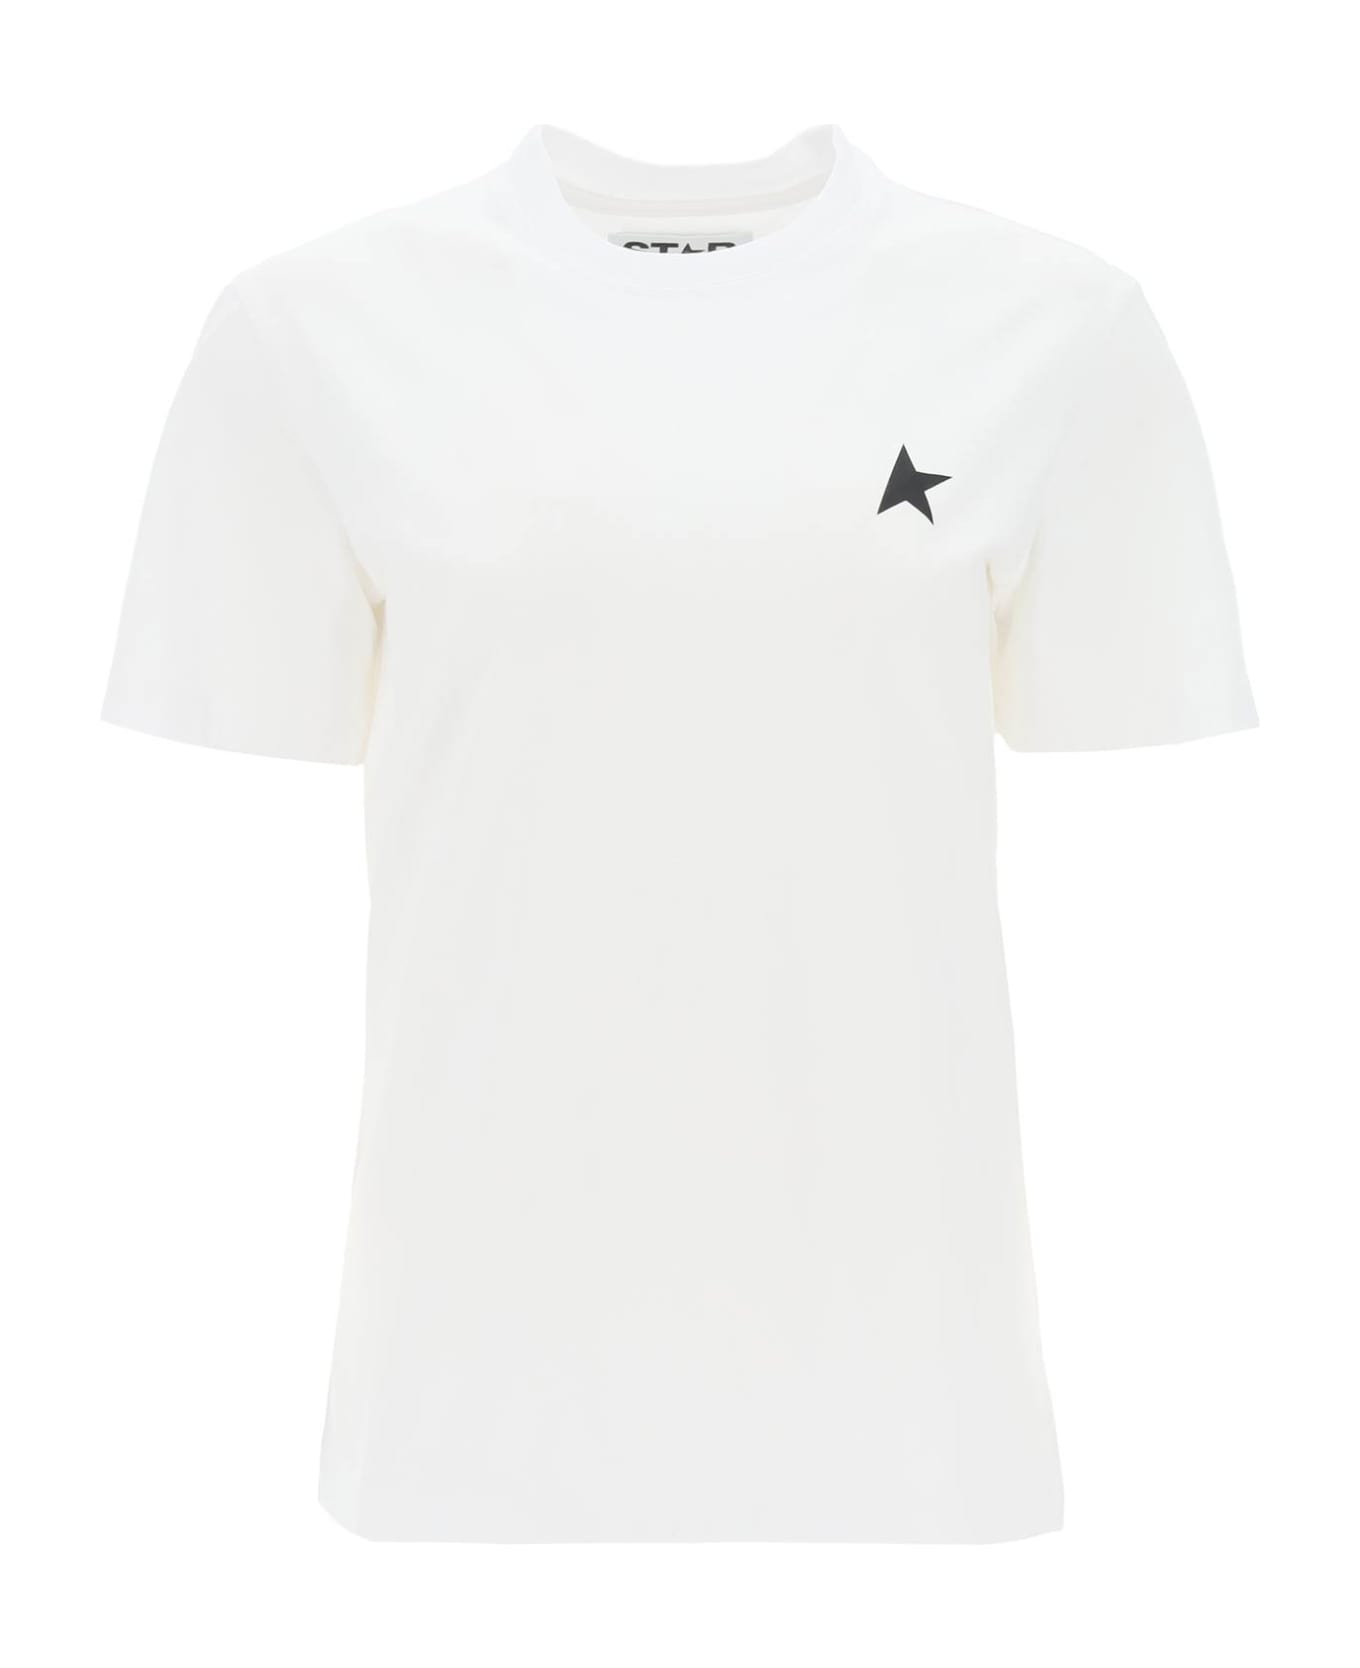 Golden Goose Regular T-shirt With Star Logo - OPTIC WHITE BLACK (Black) Tシャツ